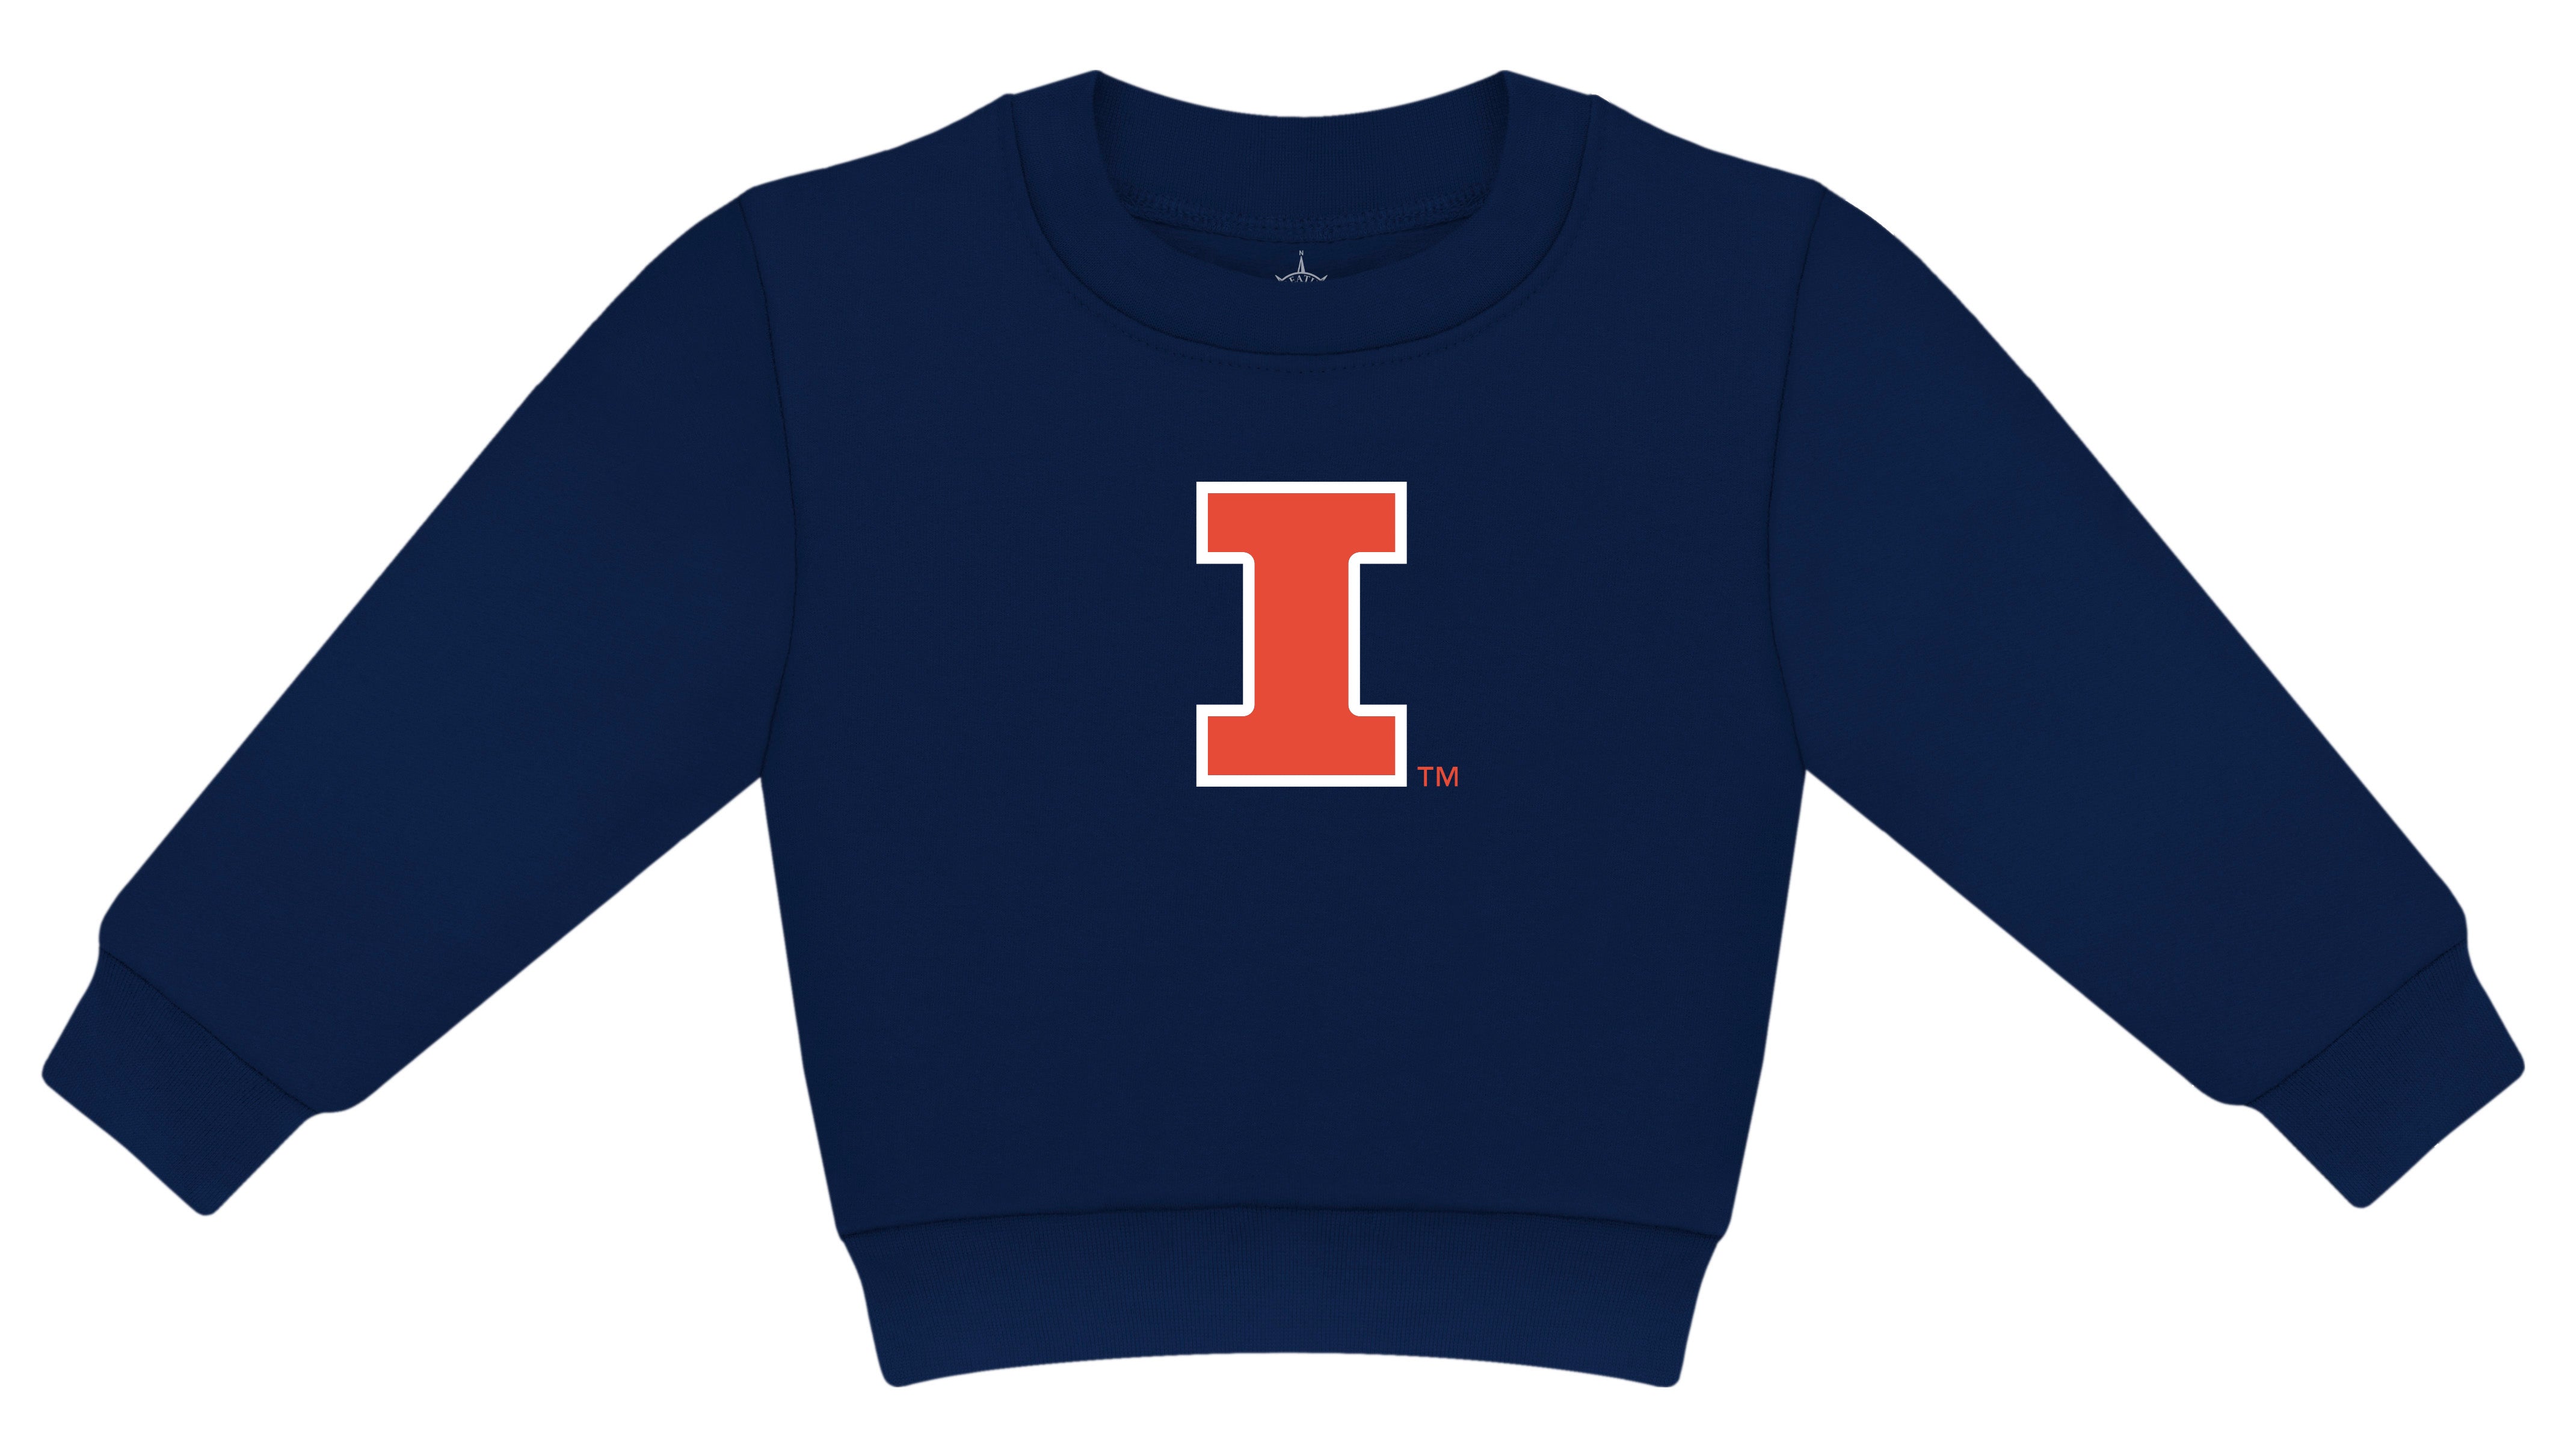 University of Illinois Sweatsuit - Twinkle Twinkle Little One